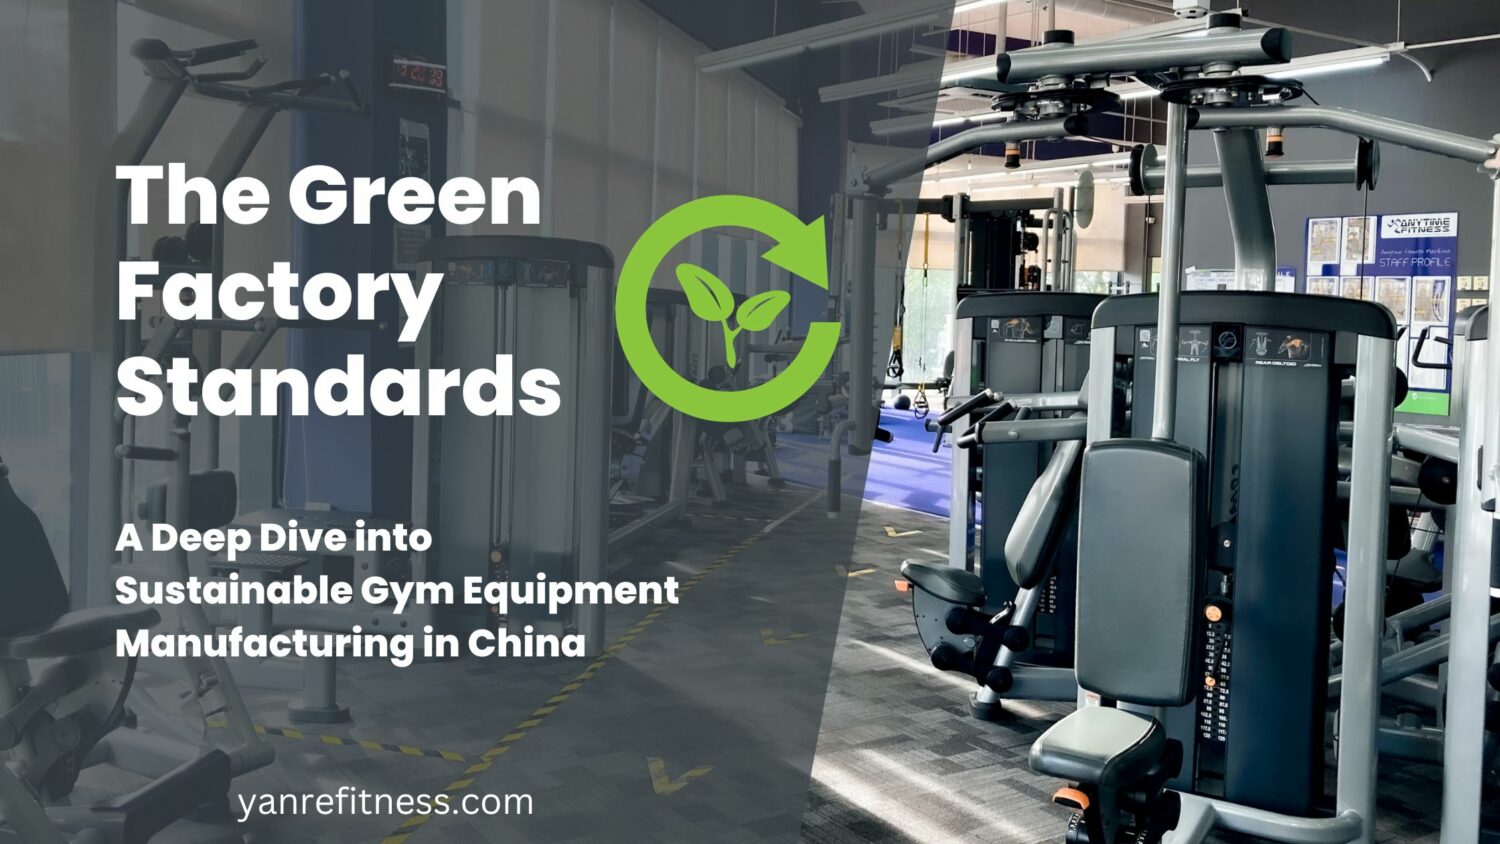 الغوص العميق في تصنيع معدات الصالة الرياضية المستدامة في الصين: معايير المصنع الأخضر 1